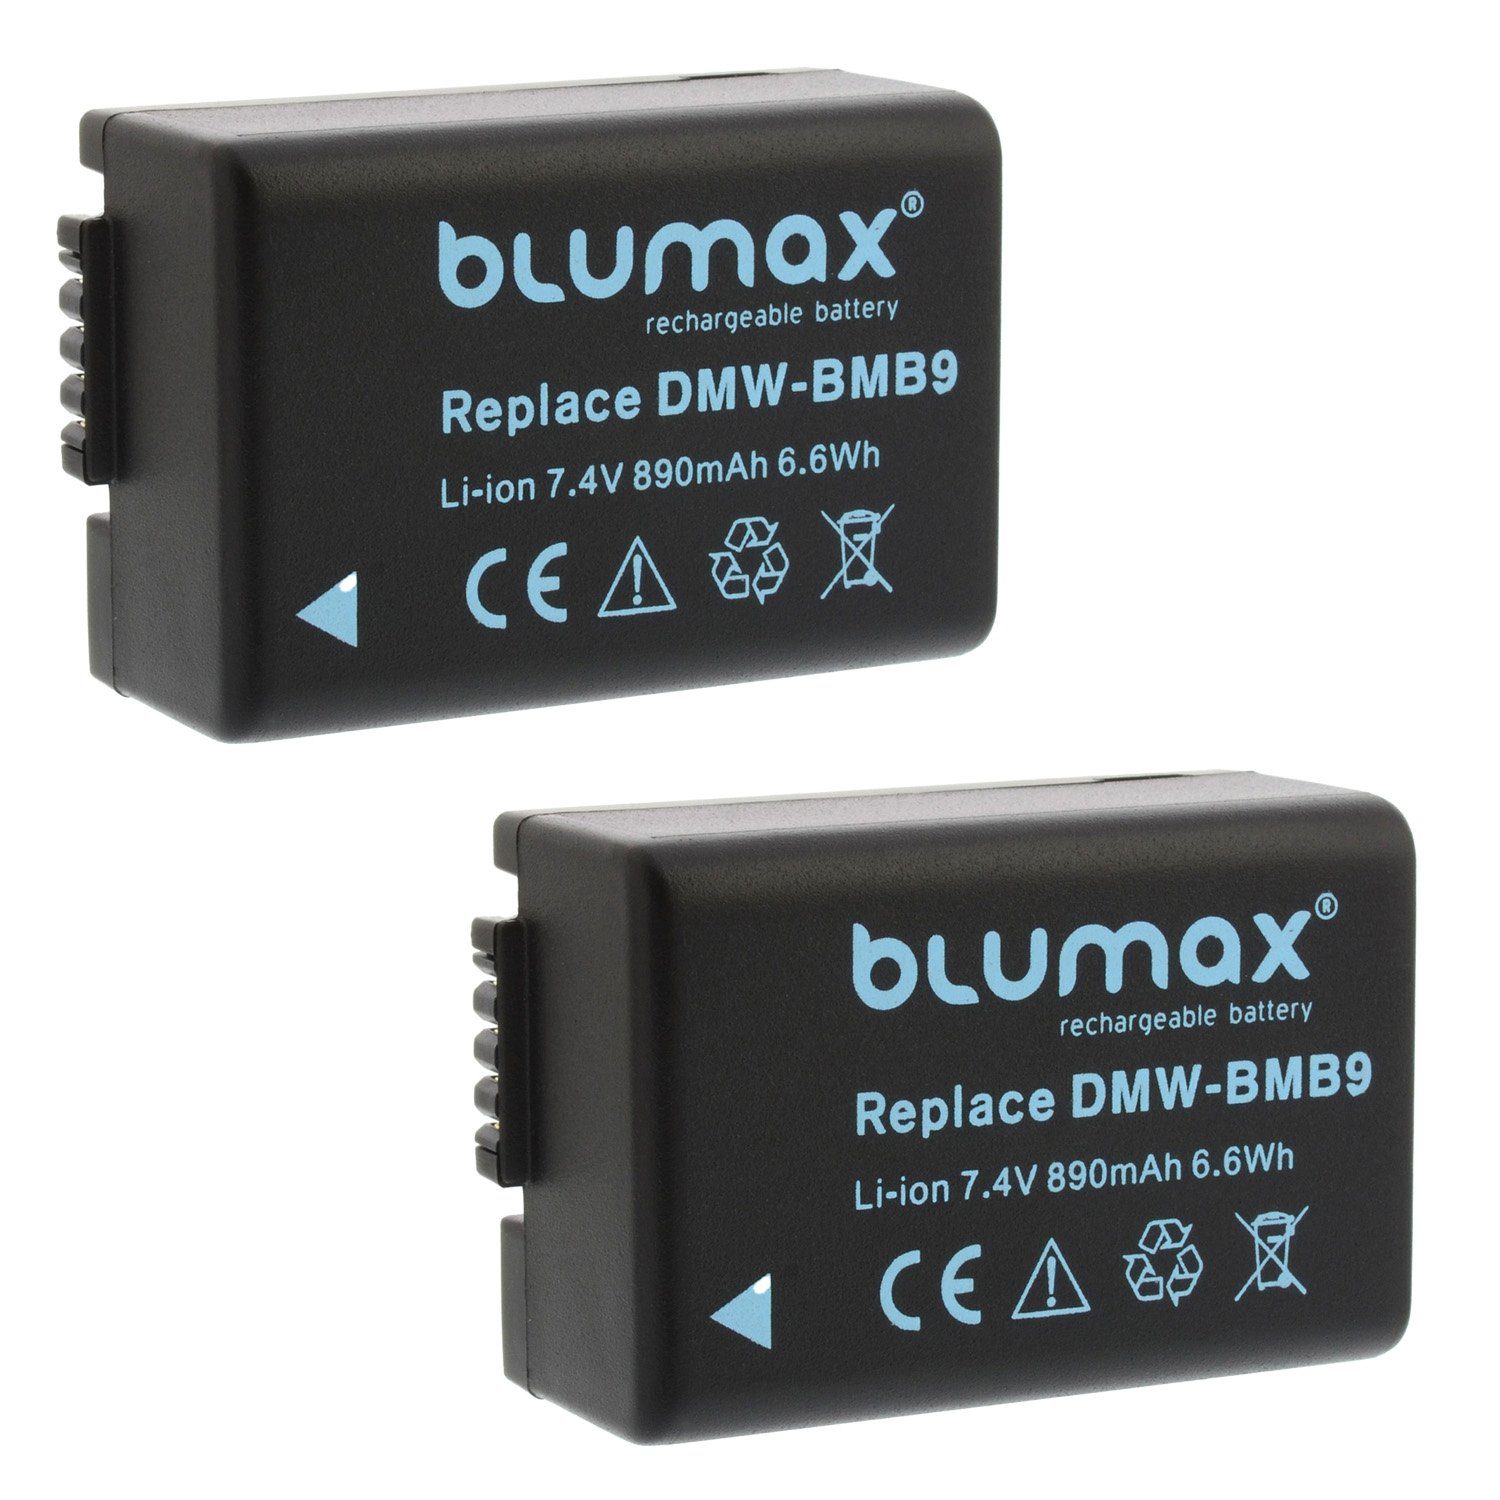 Lumix Lader Panasonic 890mAh Kamera-Akku DMW-BMB9 Blumax Set mit für